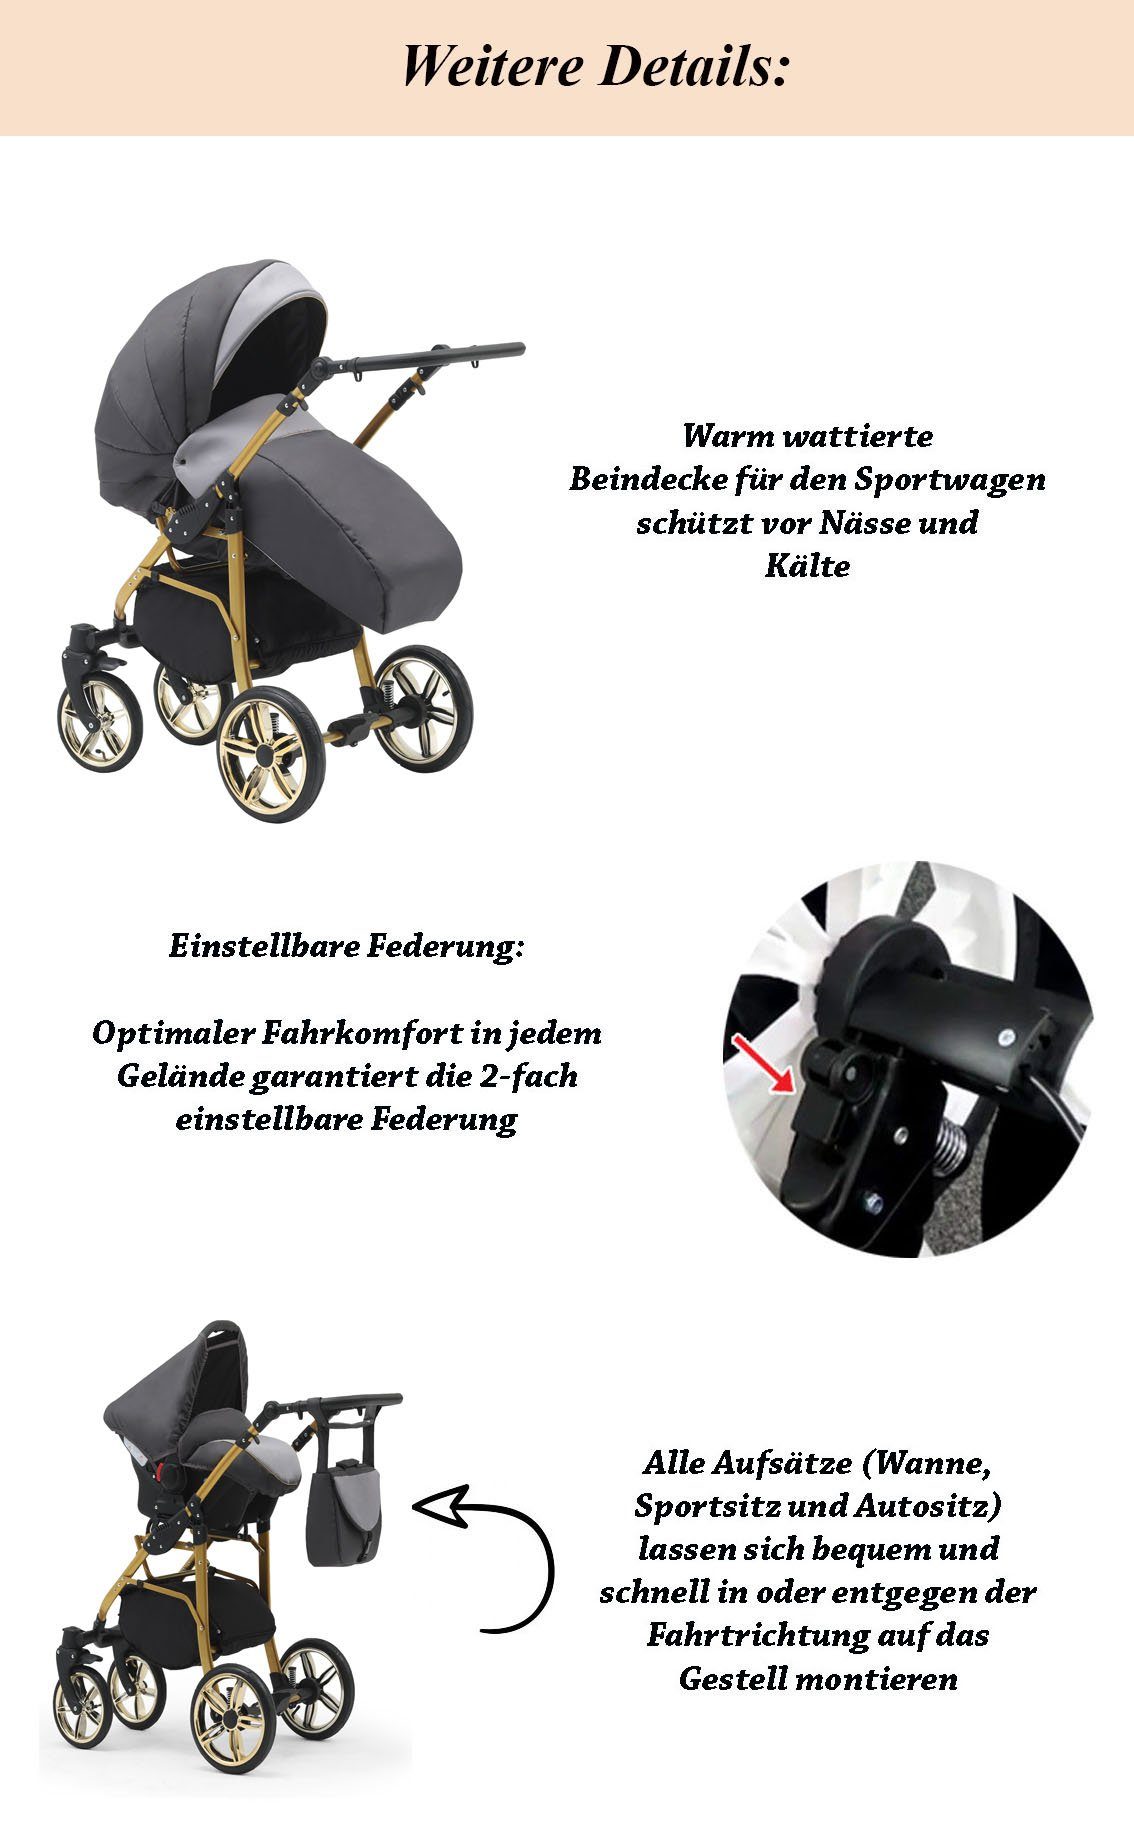 1 Kombi-Kinderwagen Gold in in 46 Kinderwagen-Set 2 - Schwarz-Grün-Weiß Cosmo 13 Teile - Farben babies-on-wheels